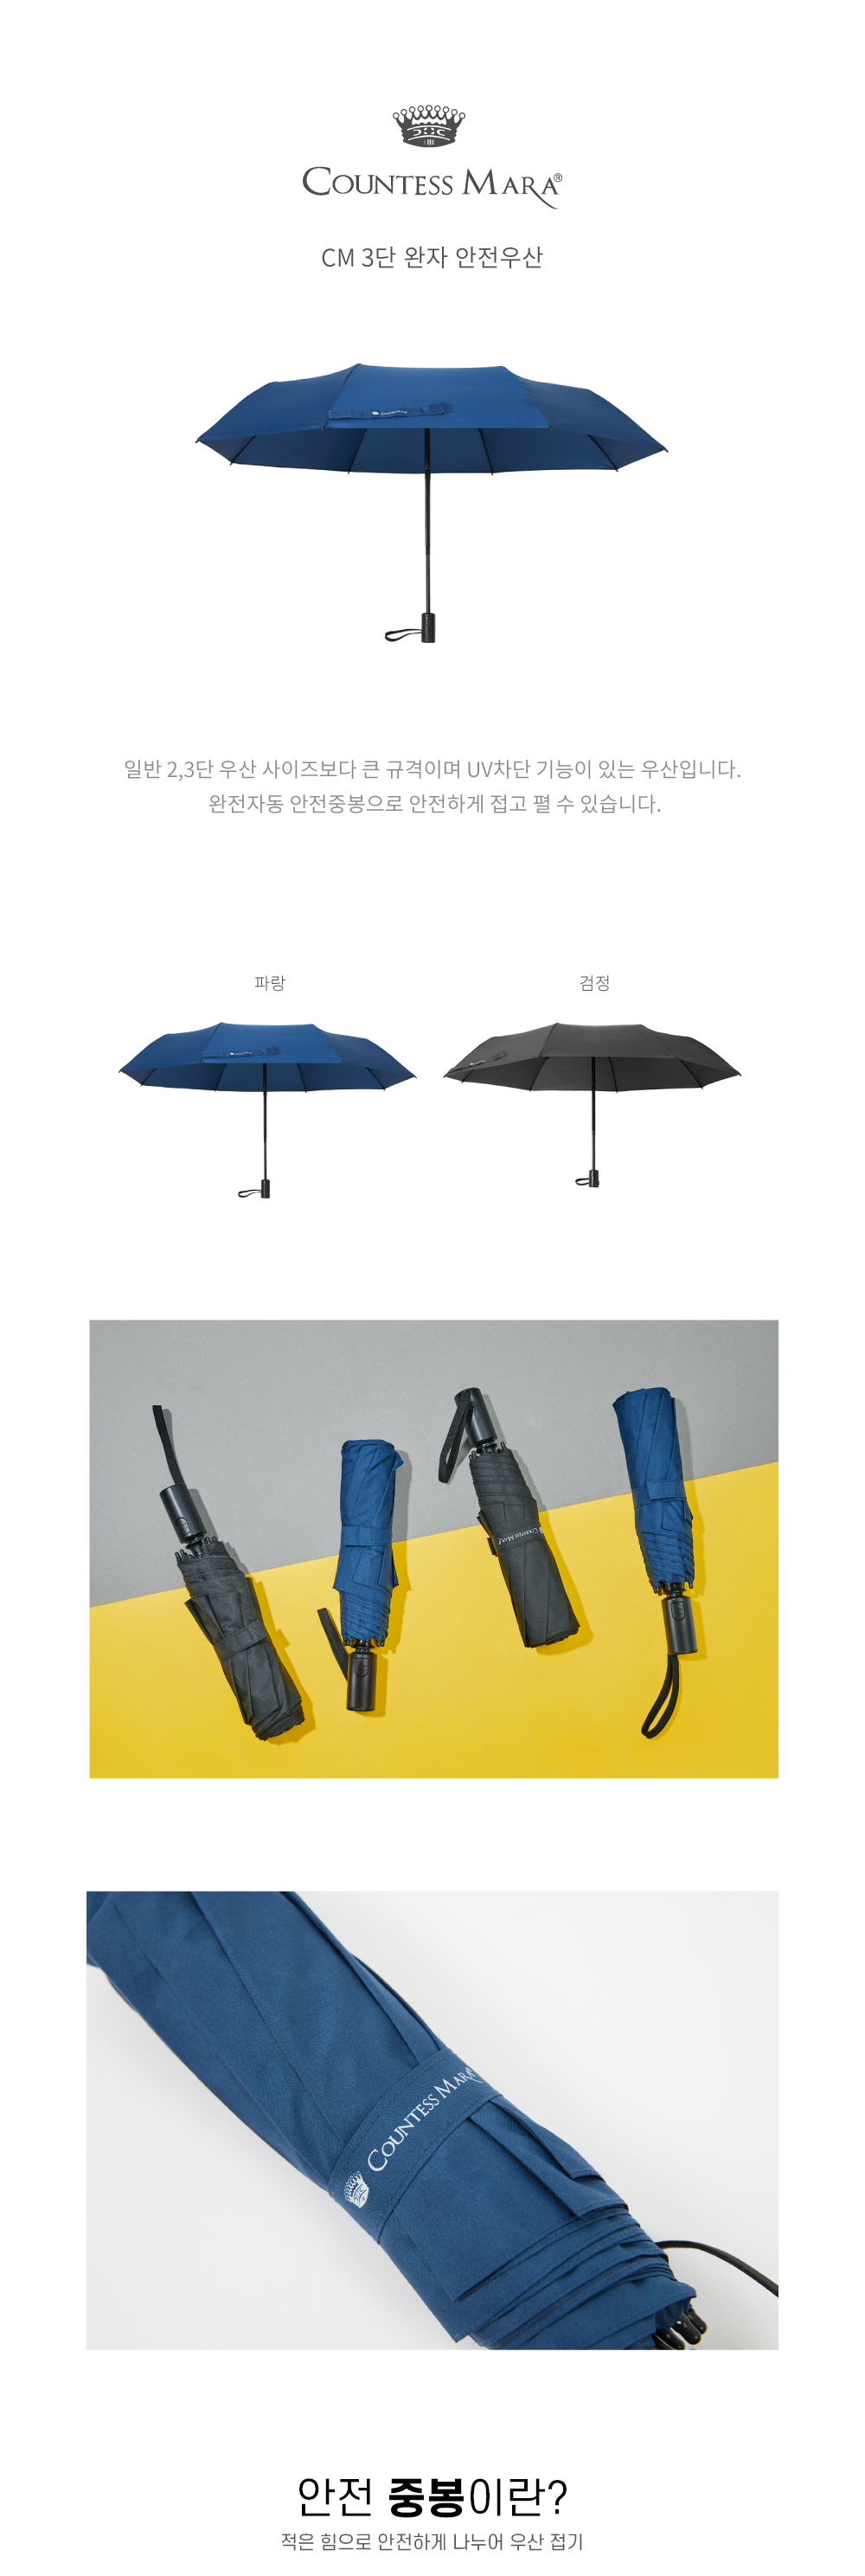 일반 2,3단 우산 사이즈보다 큰 규격이며 UV차단 기능이 있는 우산입니다.  완전자동 안전중봉으로 안전하게 접고 펼 수 있습니다.